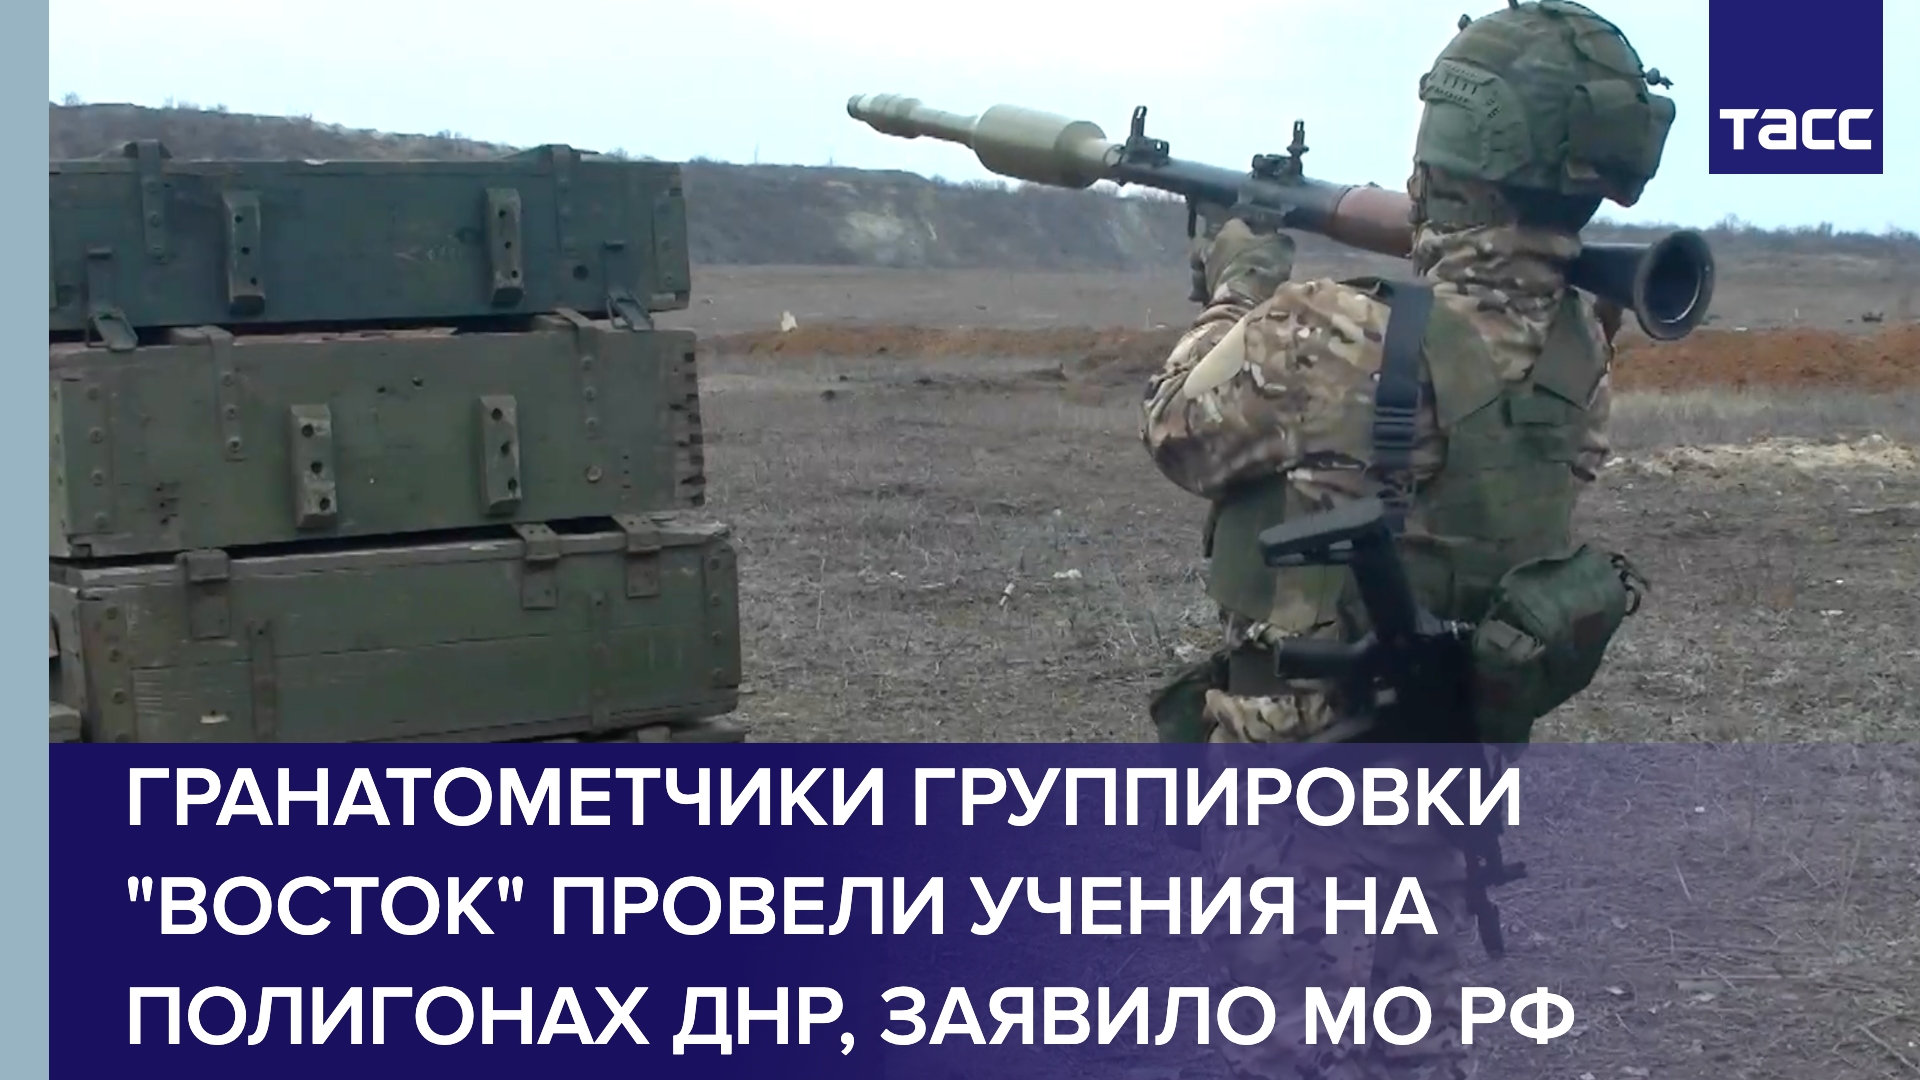 МО РФ заявило, что гранатометчики группировки "Восток" провели учения на полигонах ДНР